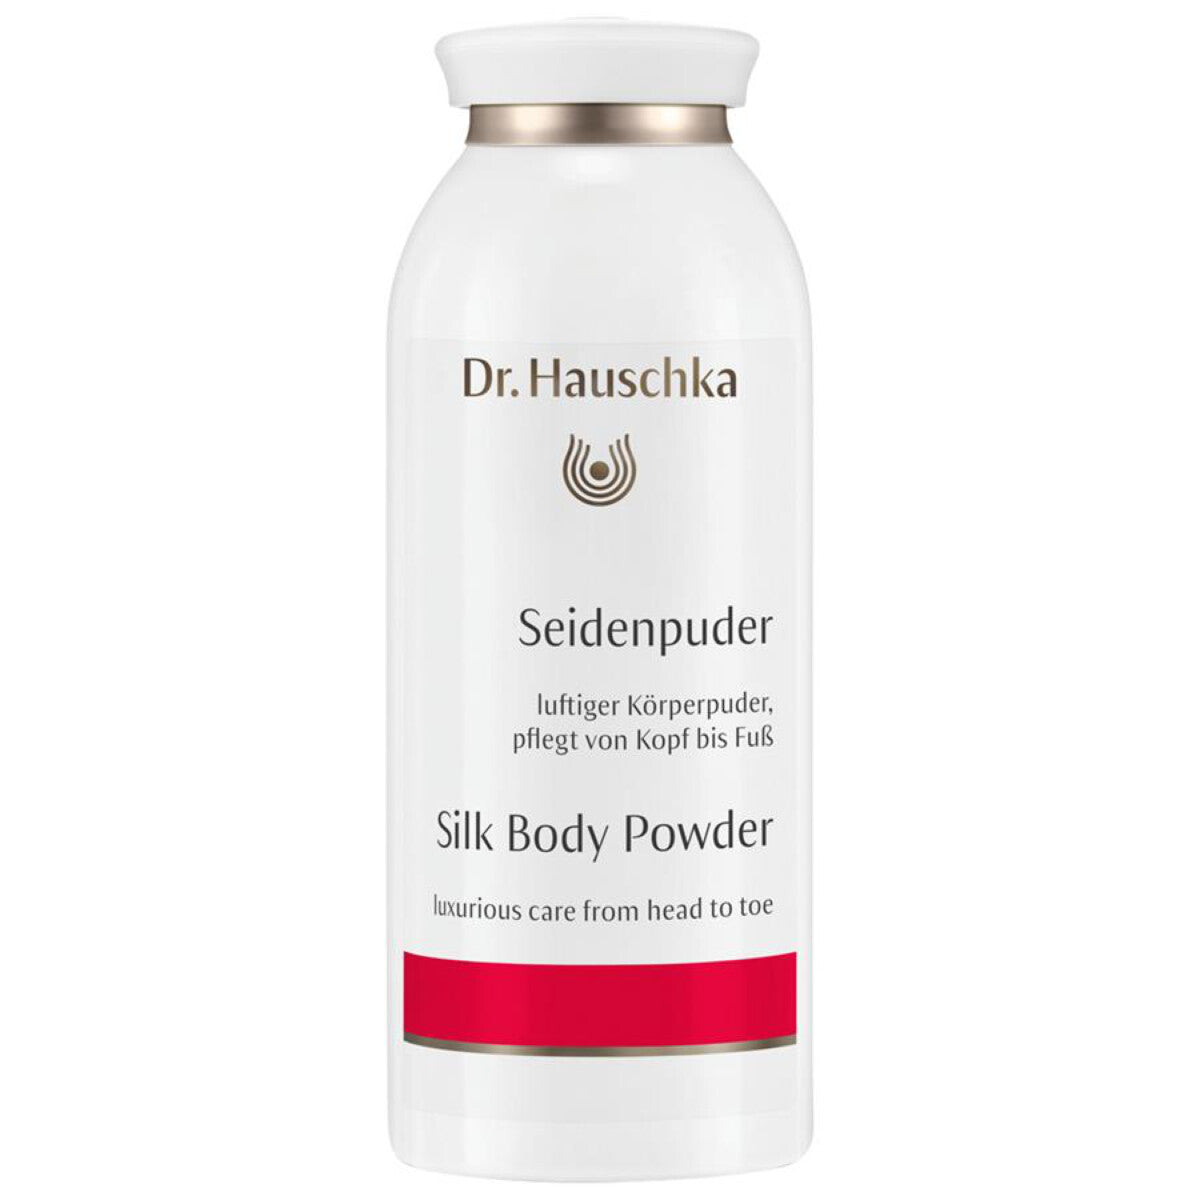 DR. HAUSCHKA Seidenpuder - 50 g